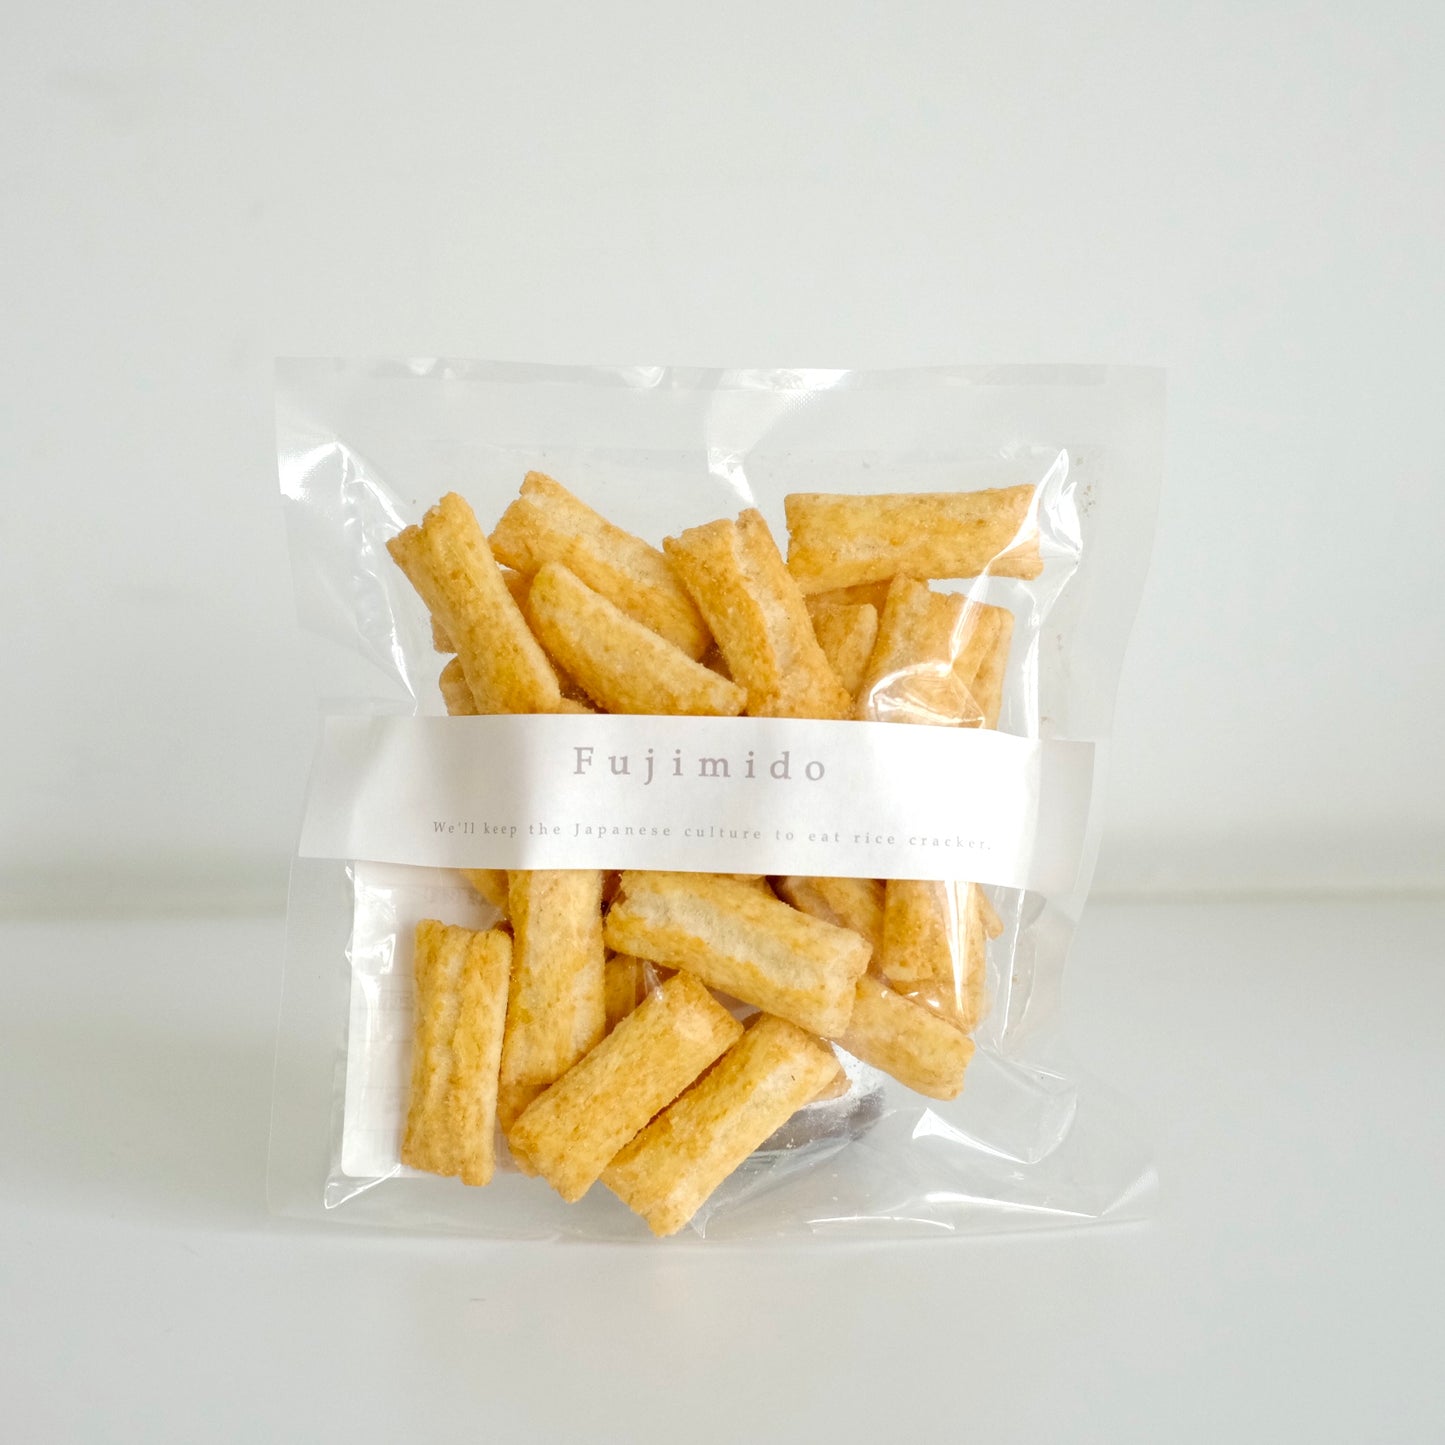 富士見堂さんの塩玄米おかき 化学調味料/合成保存料 無添加